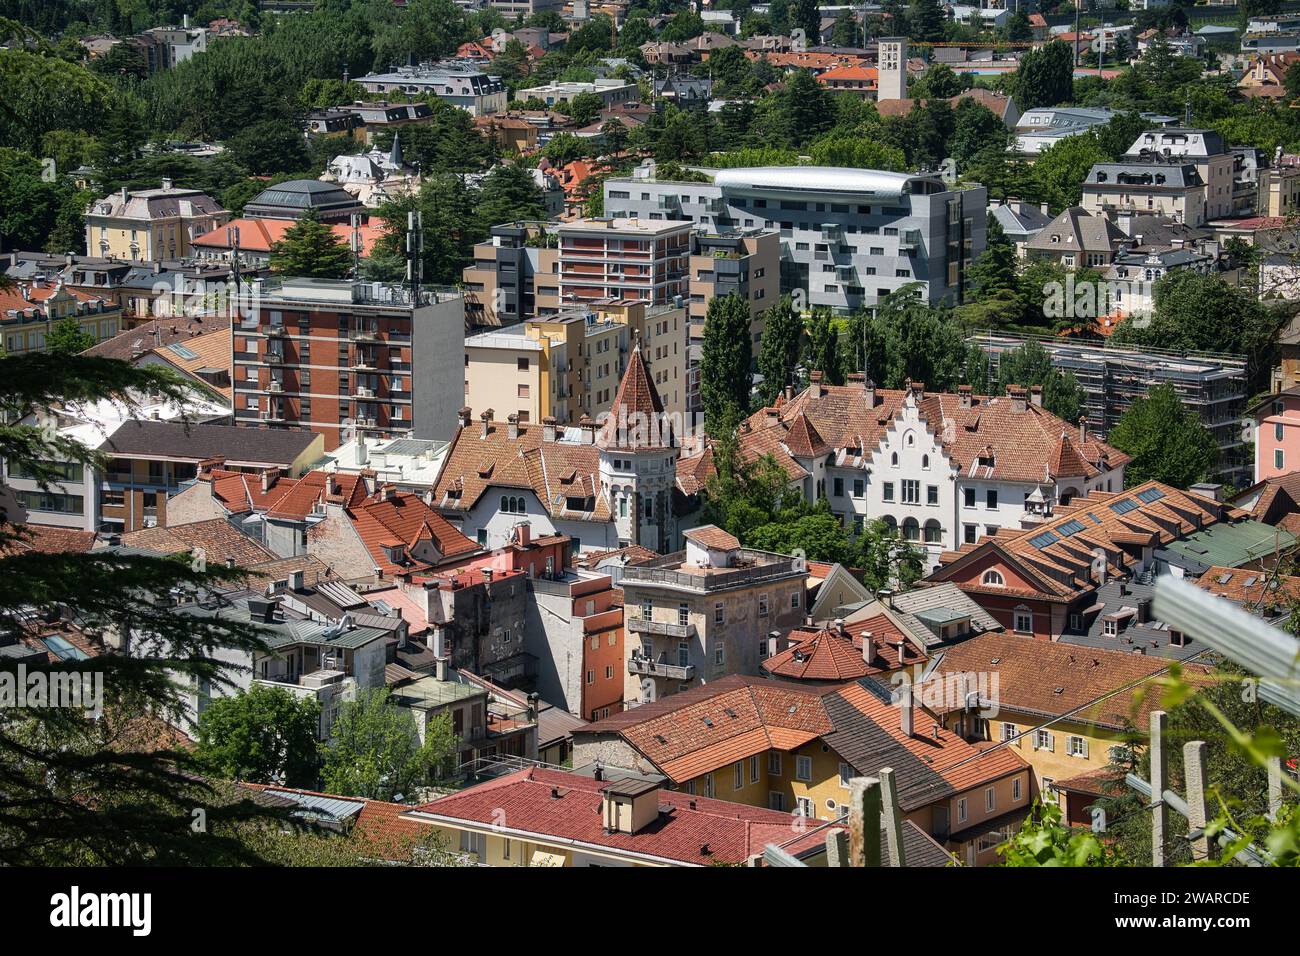 Una vista aerea della pittoresca città di Merano in alto Adige, Italia. Foto Stock